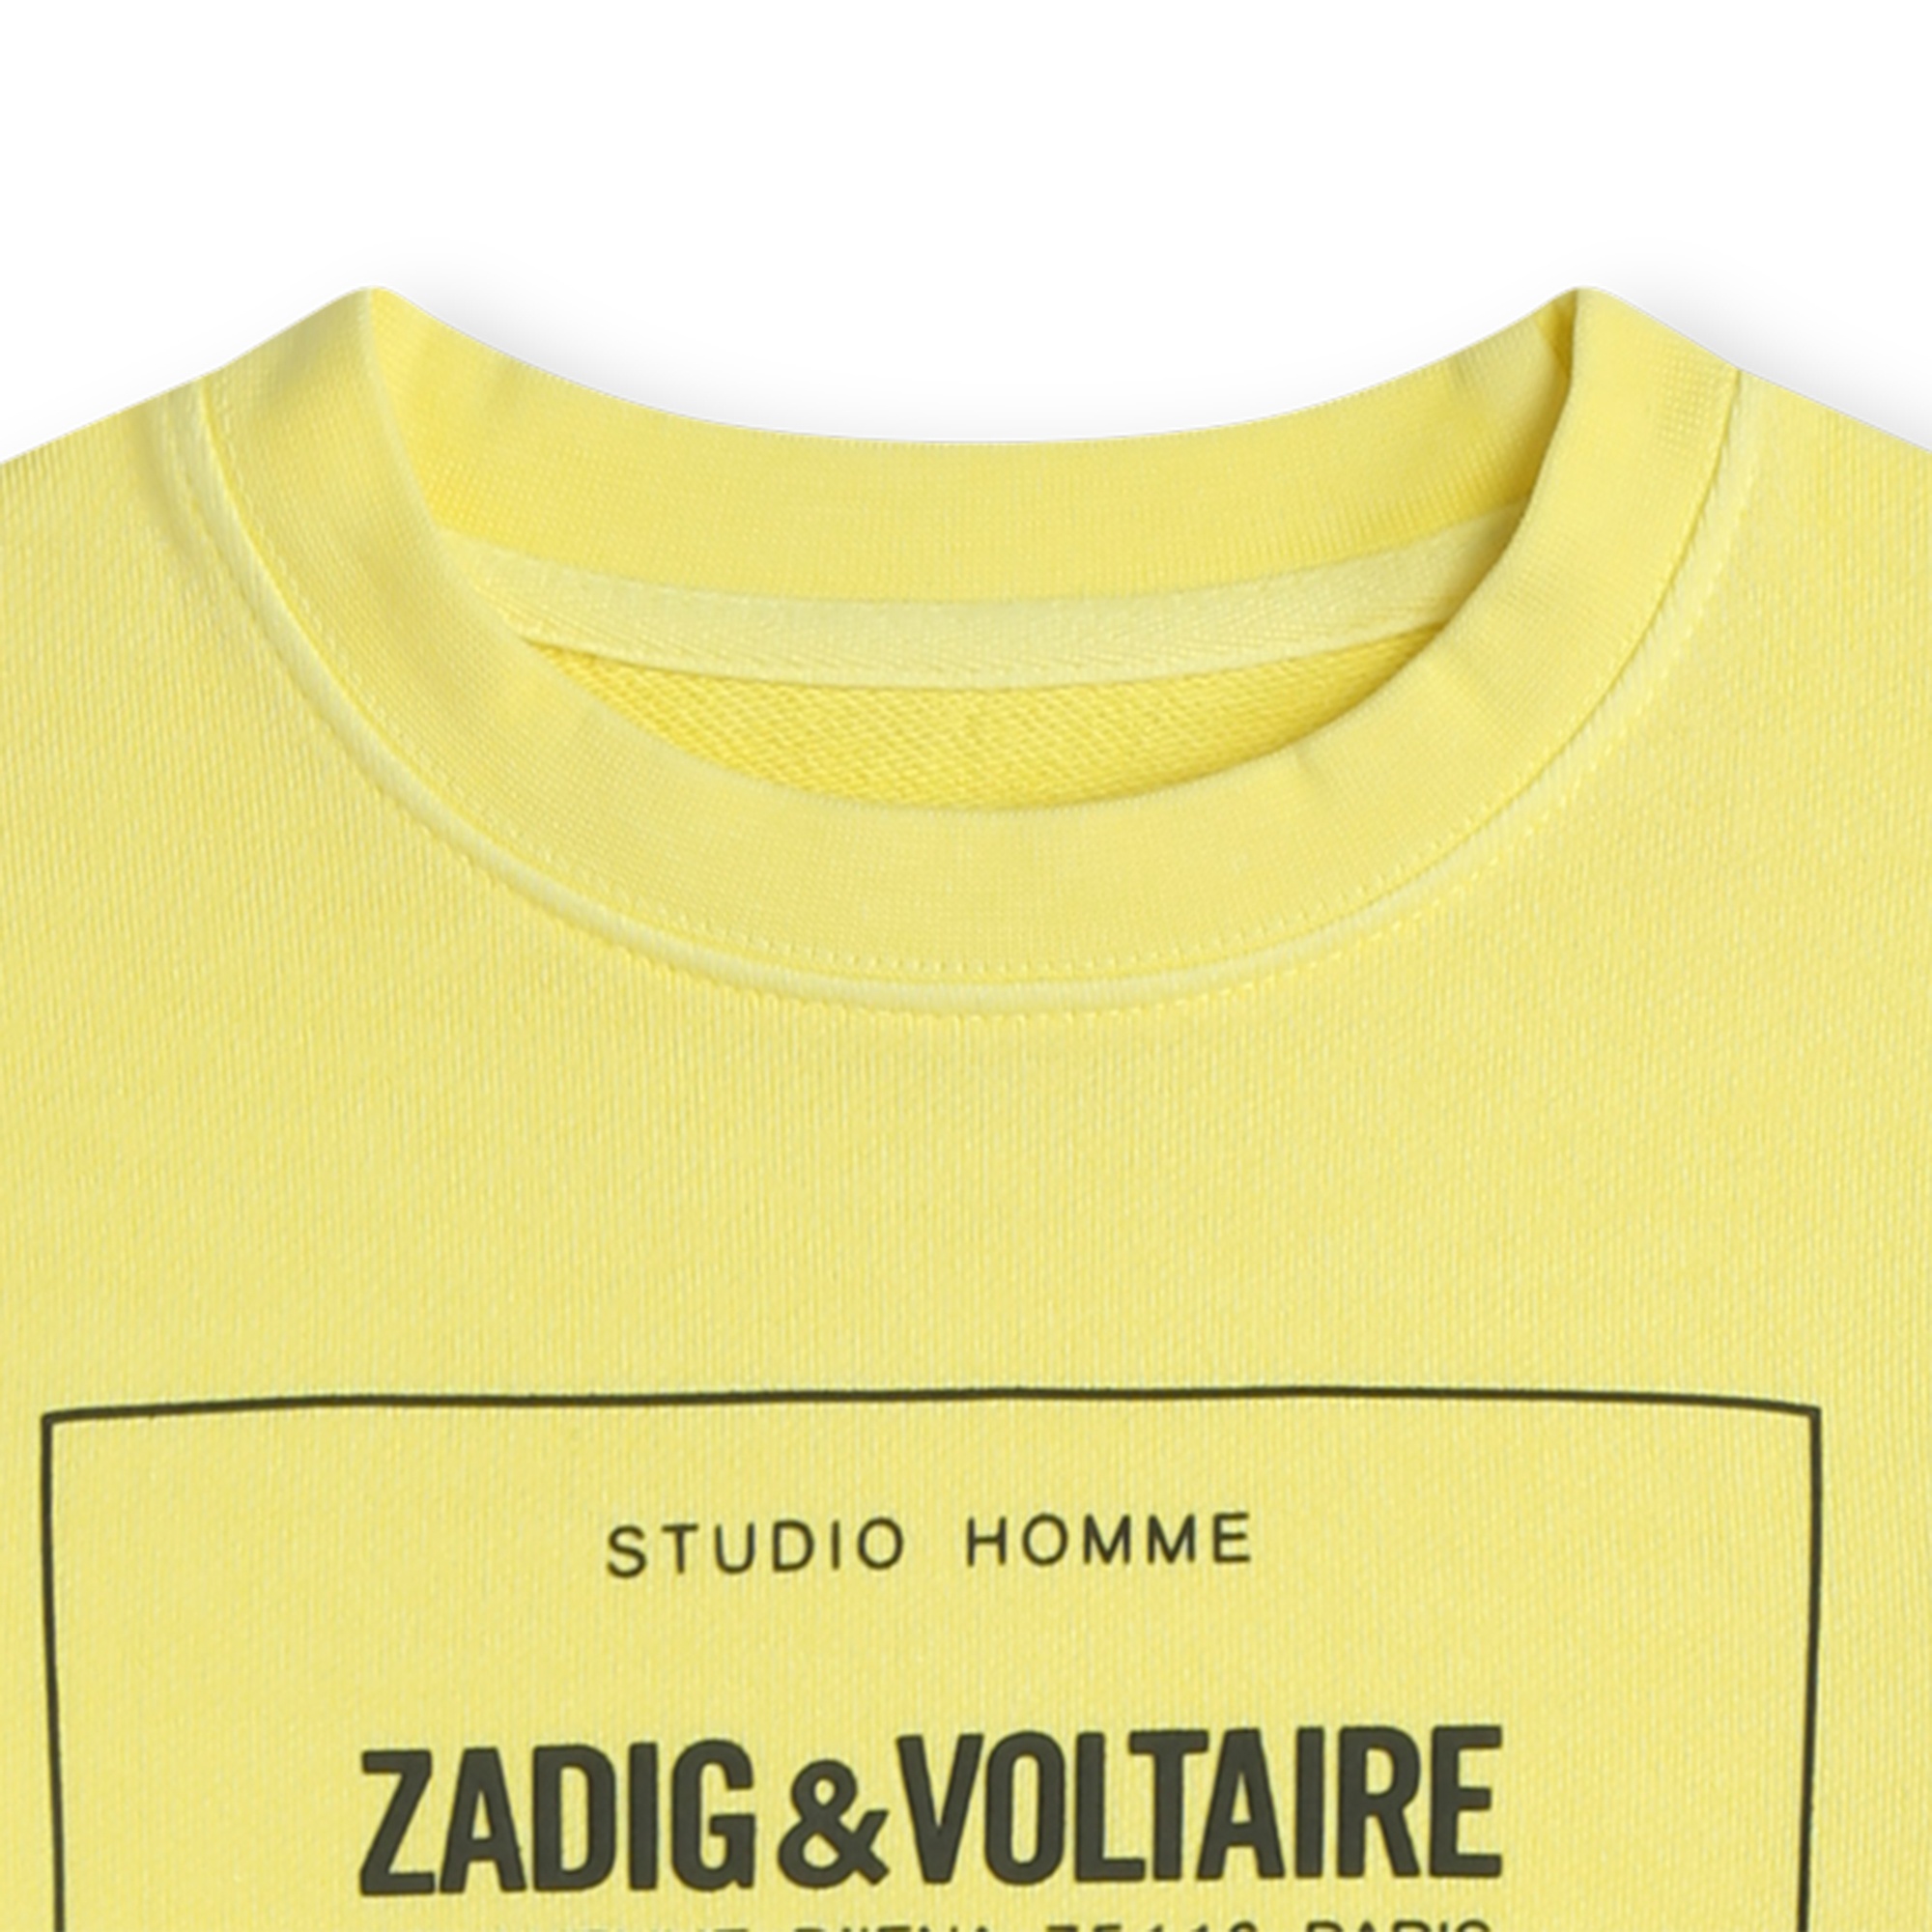 Fleece sweatshirt ZADIG & VOLTAIRE for BOY